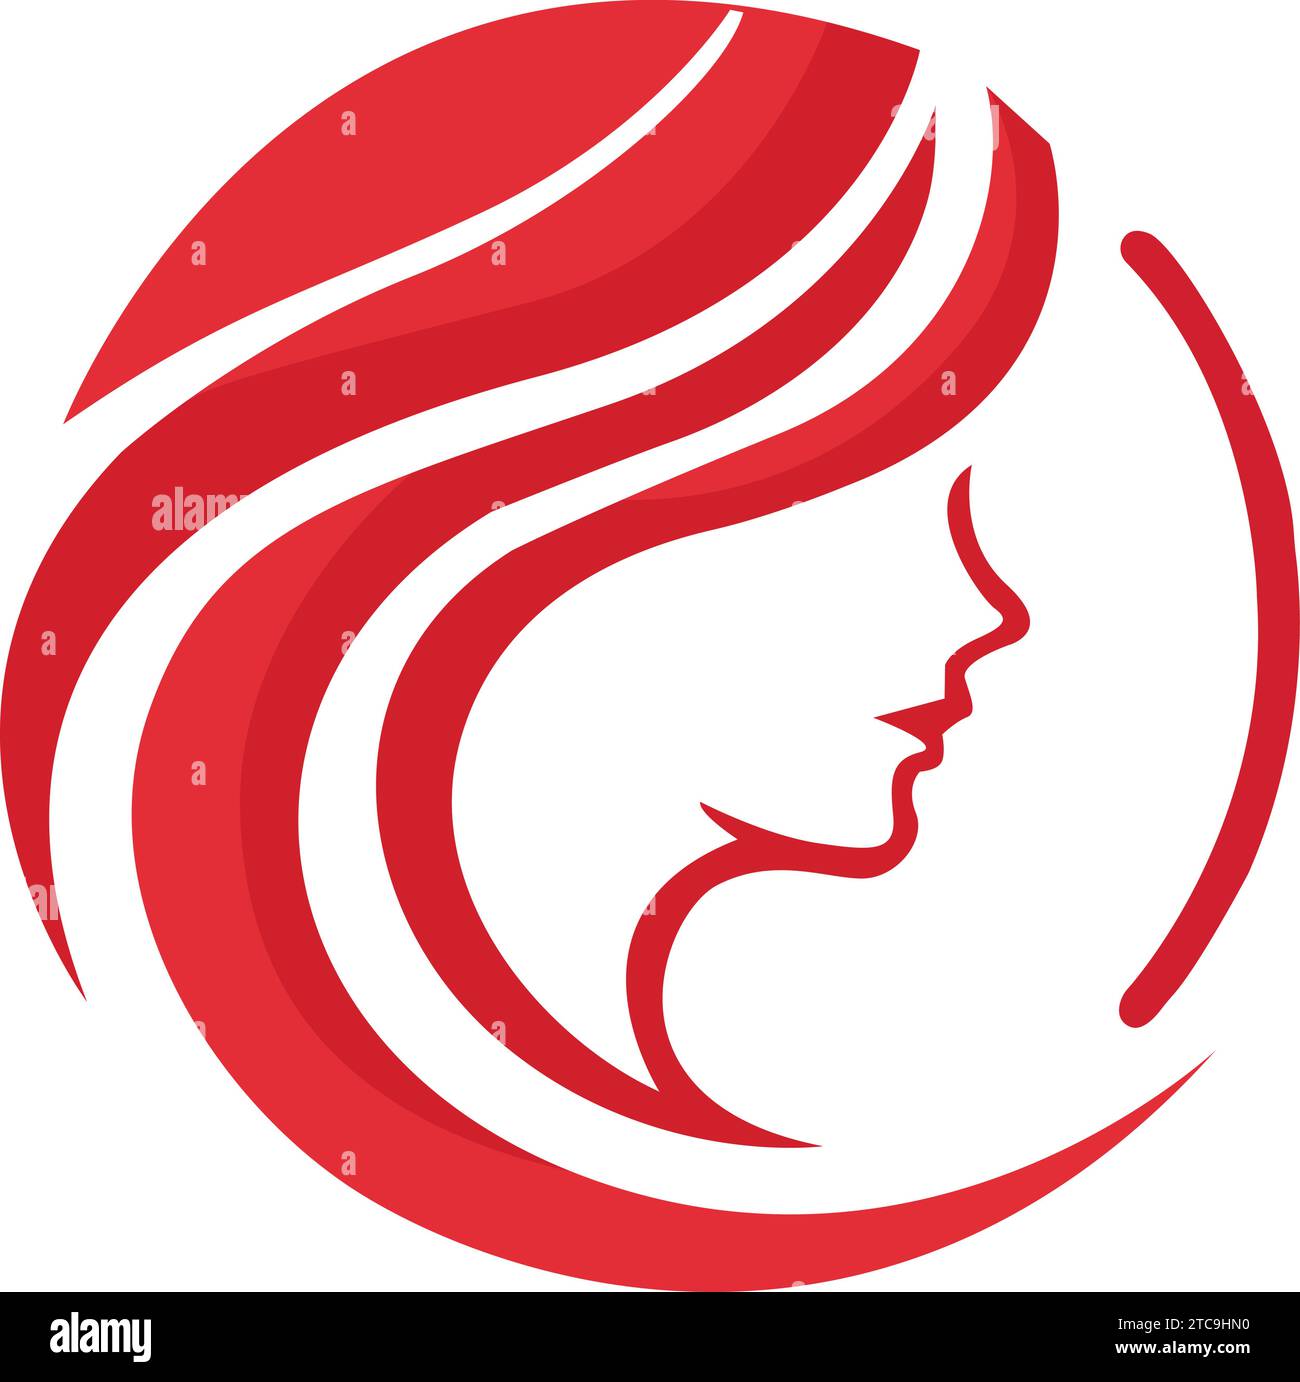 Abbraccia l'eleganza con il nostro modello con logo Red Hair Coiffure. Questo emblema sofisticato evoca stile e raffinatezza, perfetto per saloni, stilisti o bea Illustrazione Vettoriale